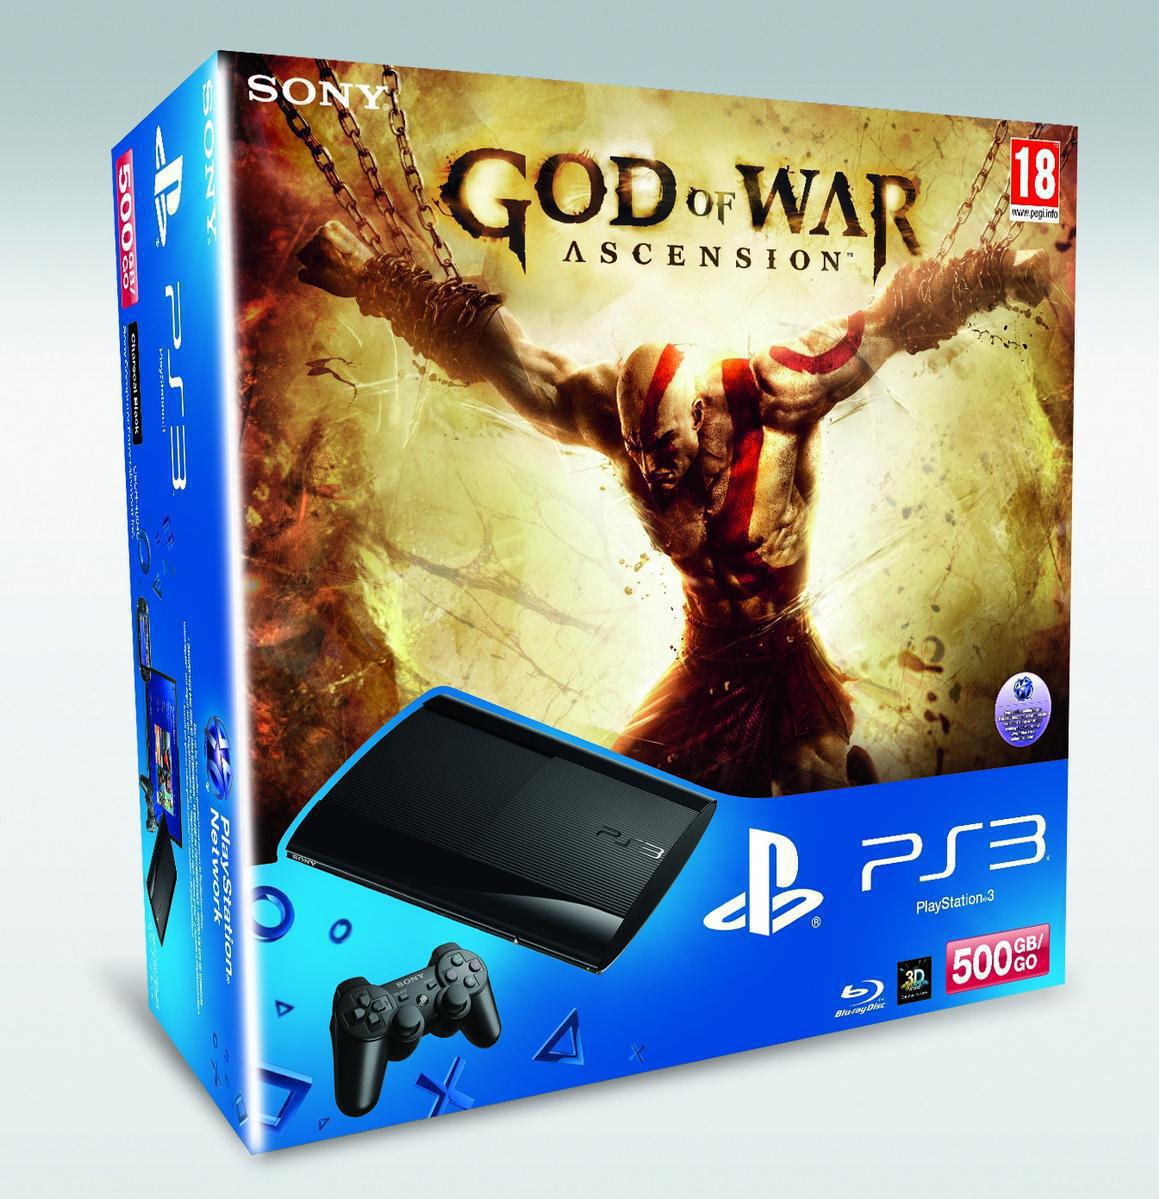 PlayStation 3 Super Slim 500 GB God of War Ascension Bundle